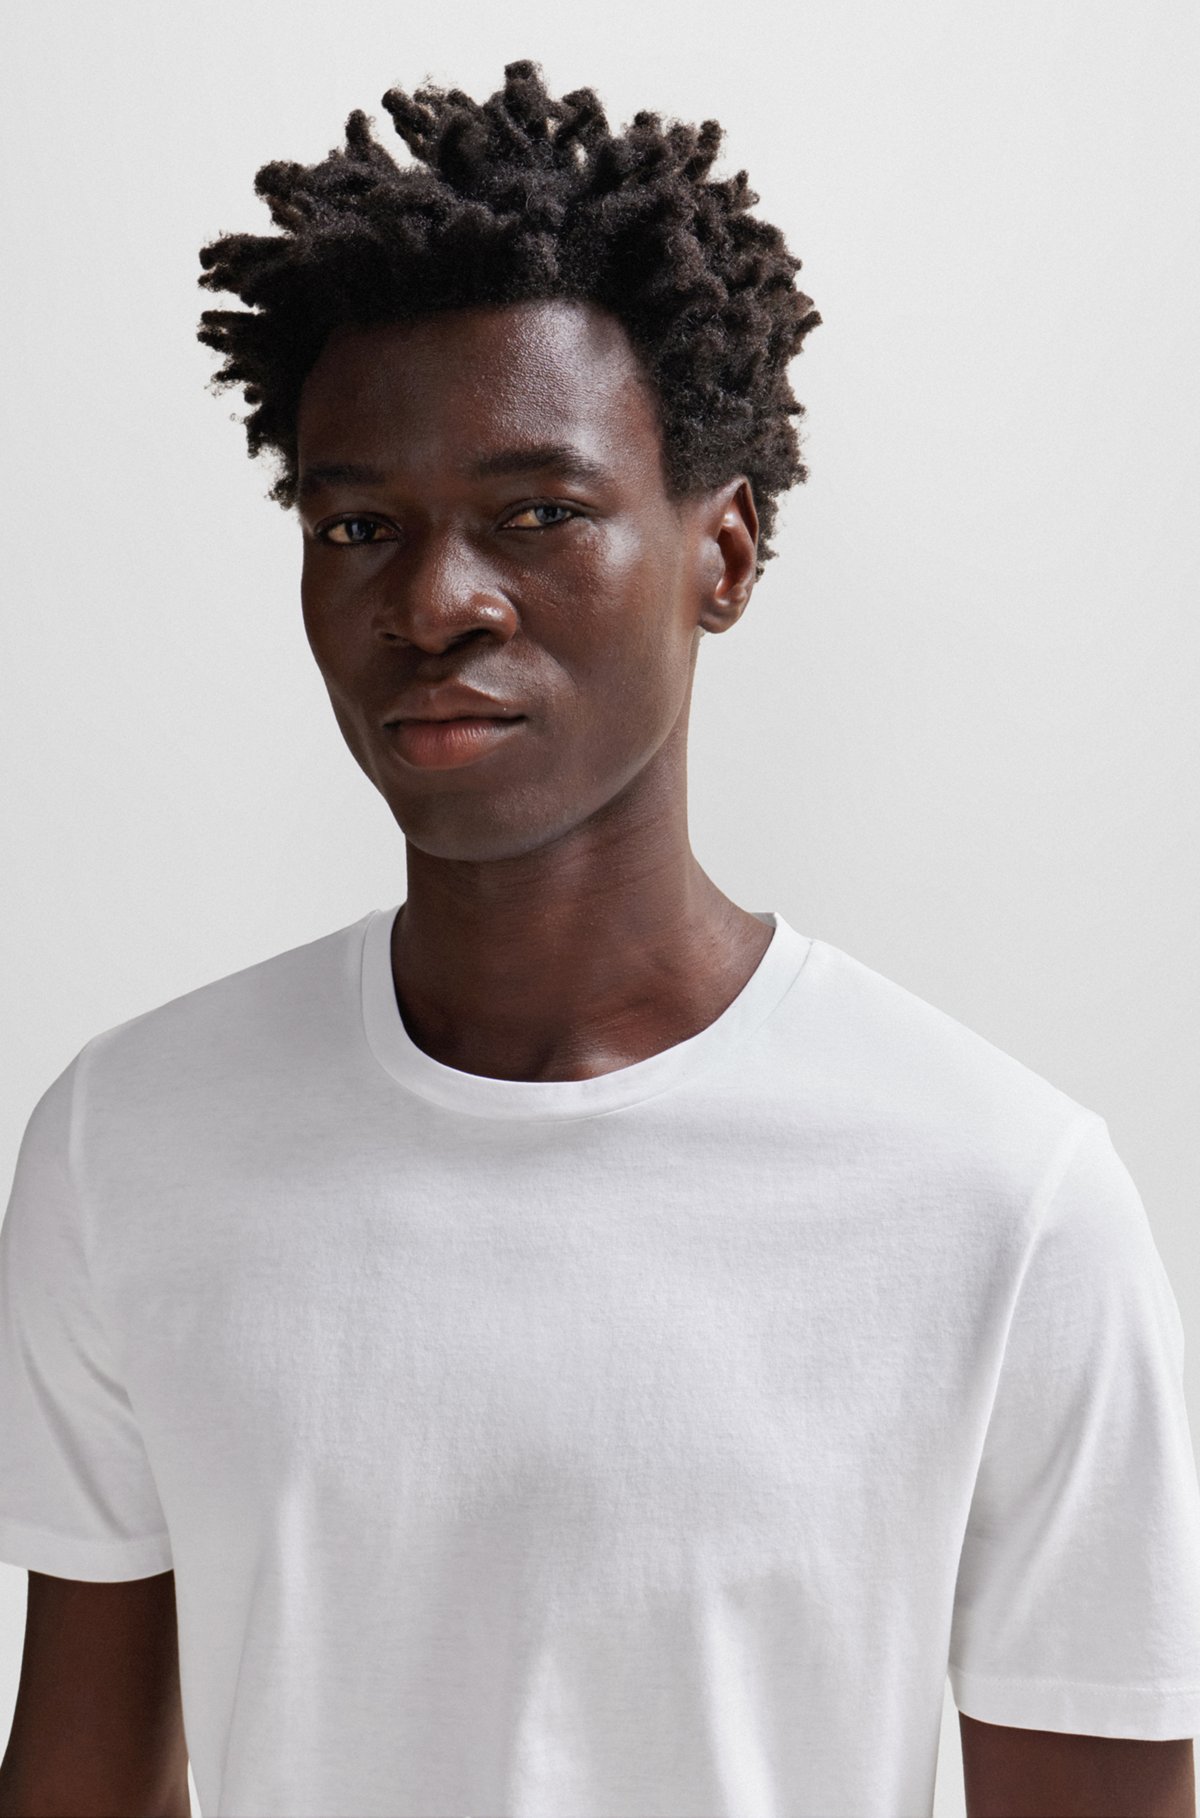 Slim-fit short-sleeved T-shirt in mercerized cotton, White